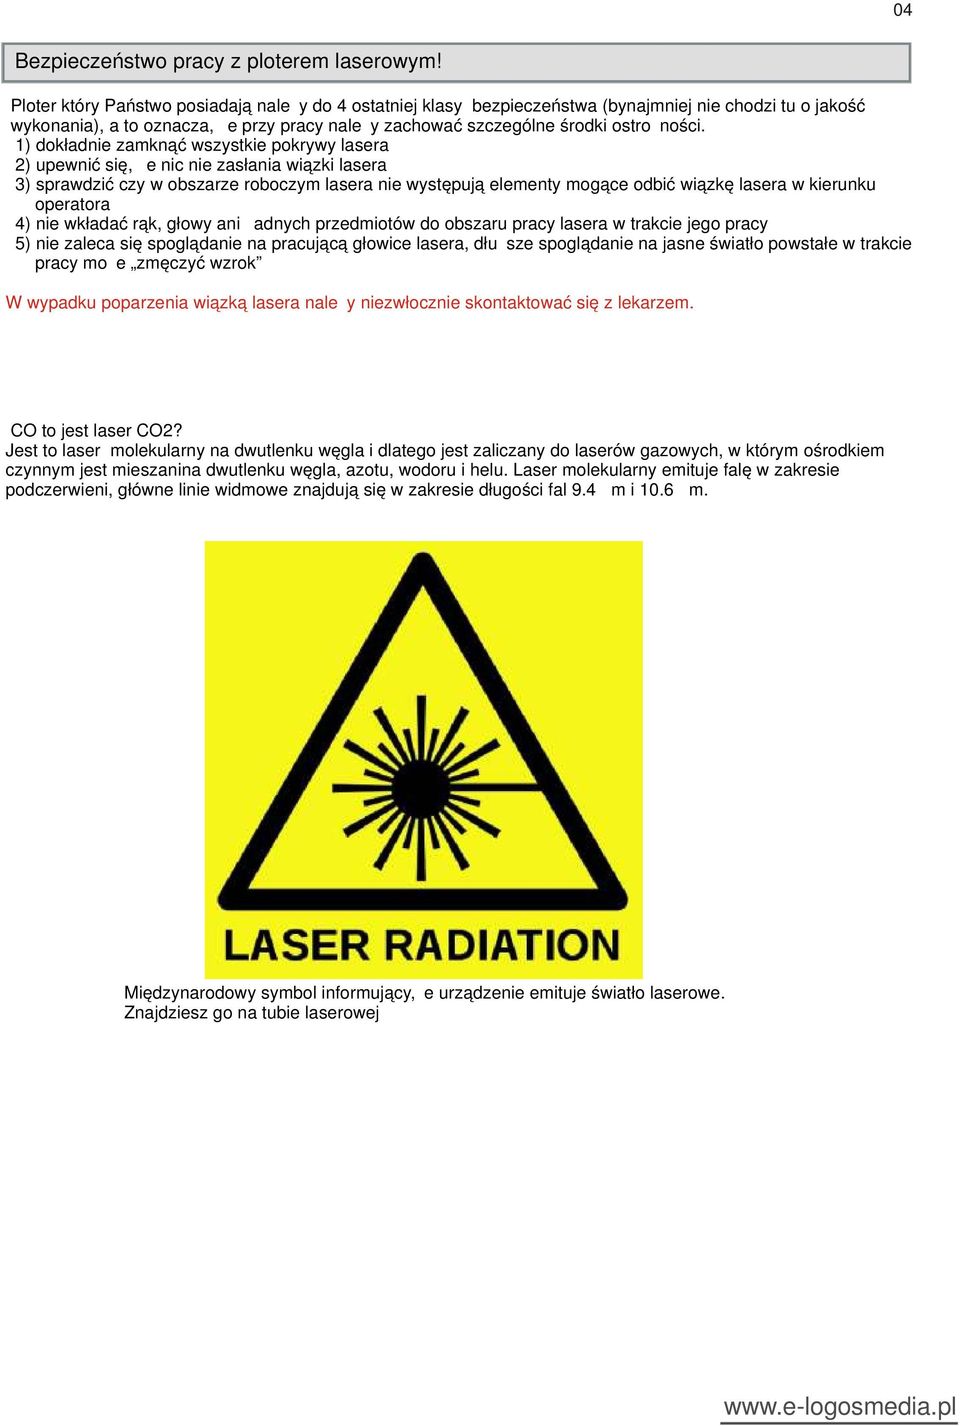 1) dokładnie zamknąć wszystkie pokrywy lasera 2) upewnić się, że nic nie zasłania wiązki lasera 3) sprawdzić czy w obszarze roboczym lasera nie występują elementy mogące odbić wiązkę lasera w